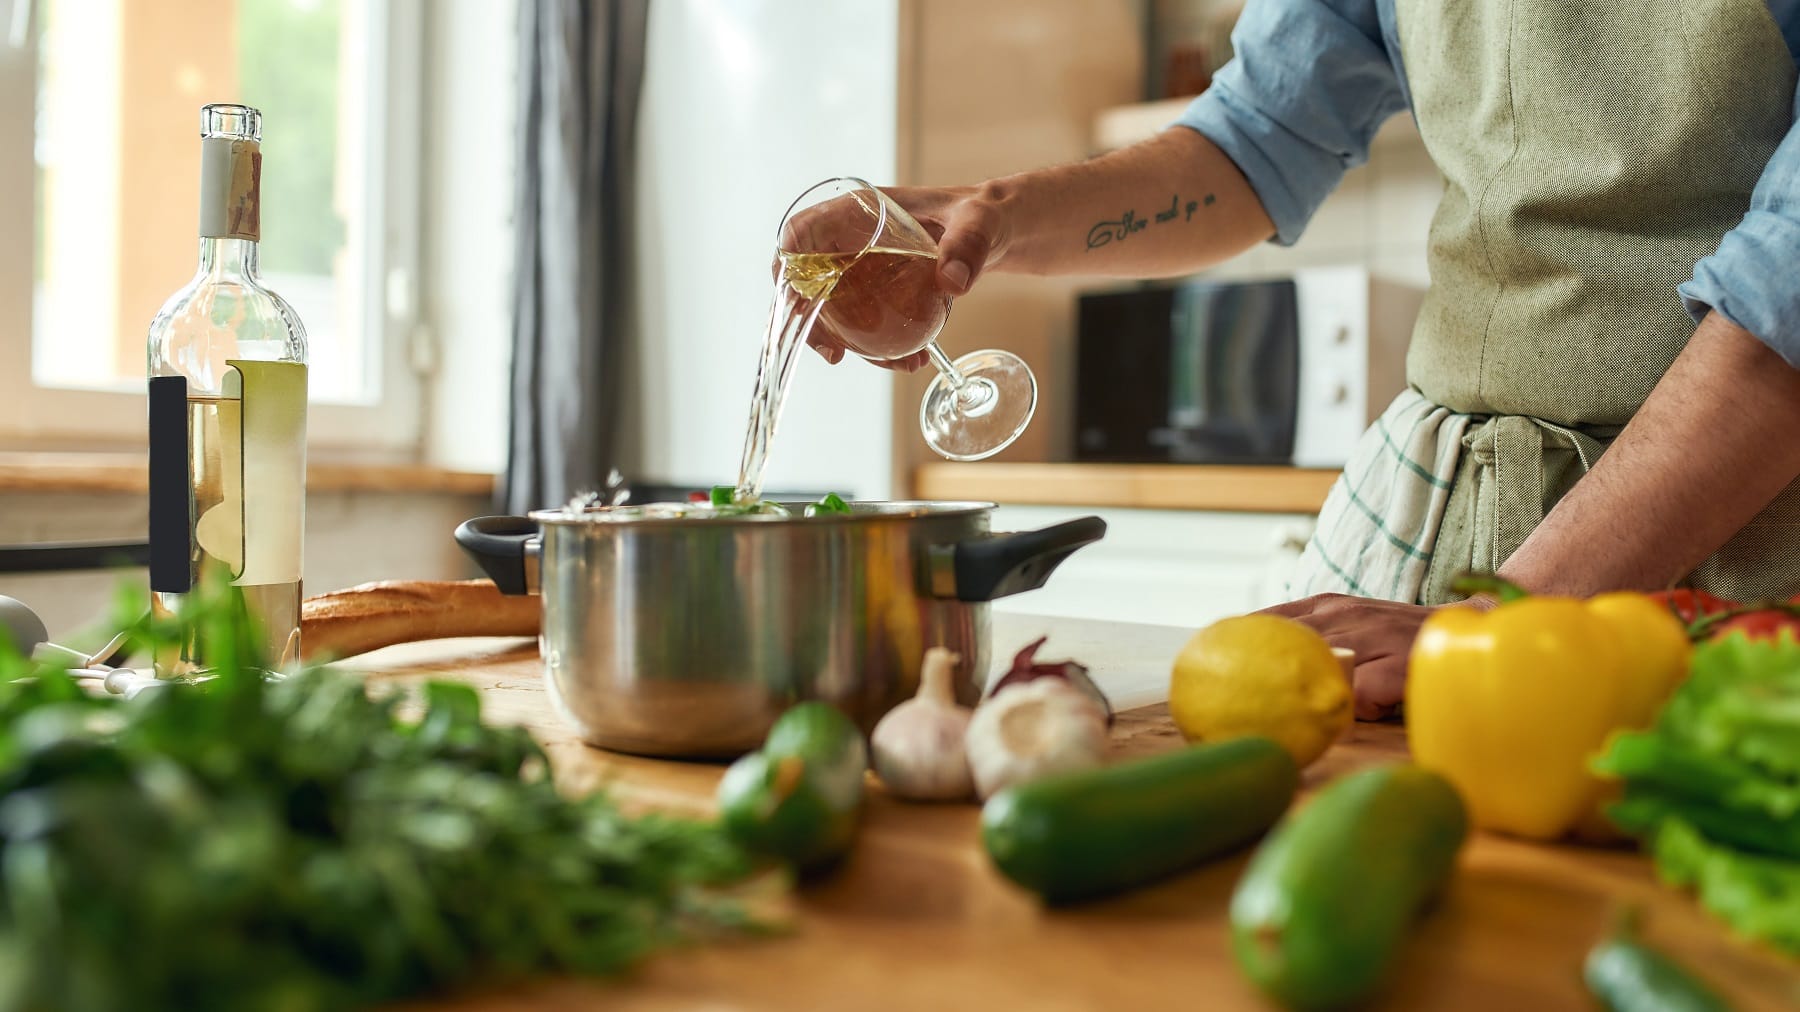 Mann mit Tattoo am Arm steht in einer hellen Küche und gießt Weißwein in einen Topf, der hinter Gemüse auf einer hellen Arbeitsplatte aus Holz steht.